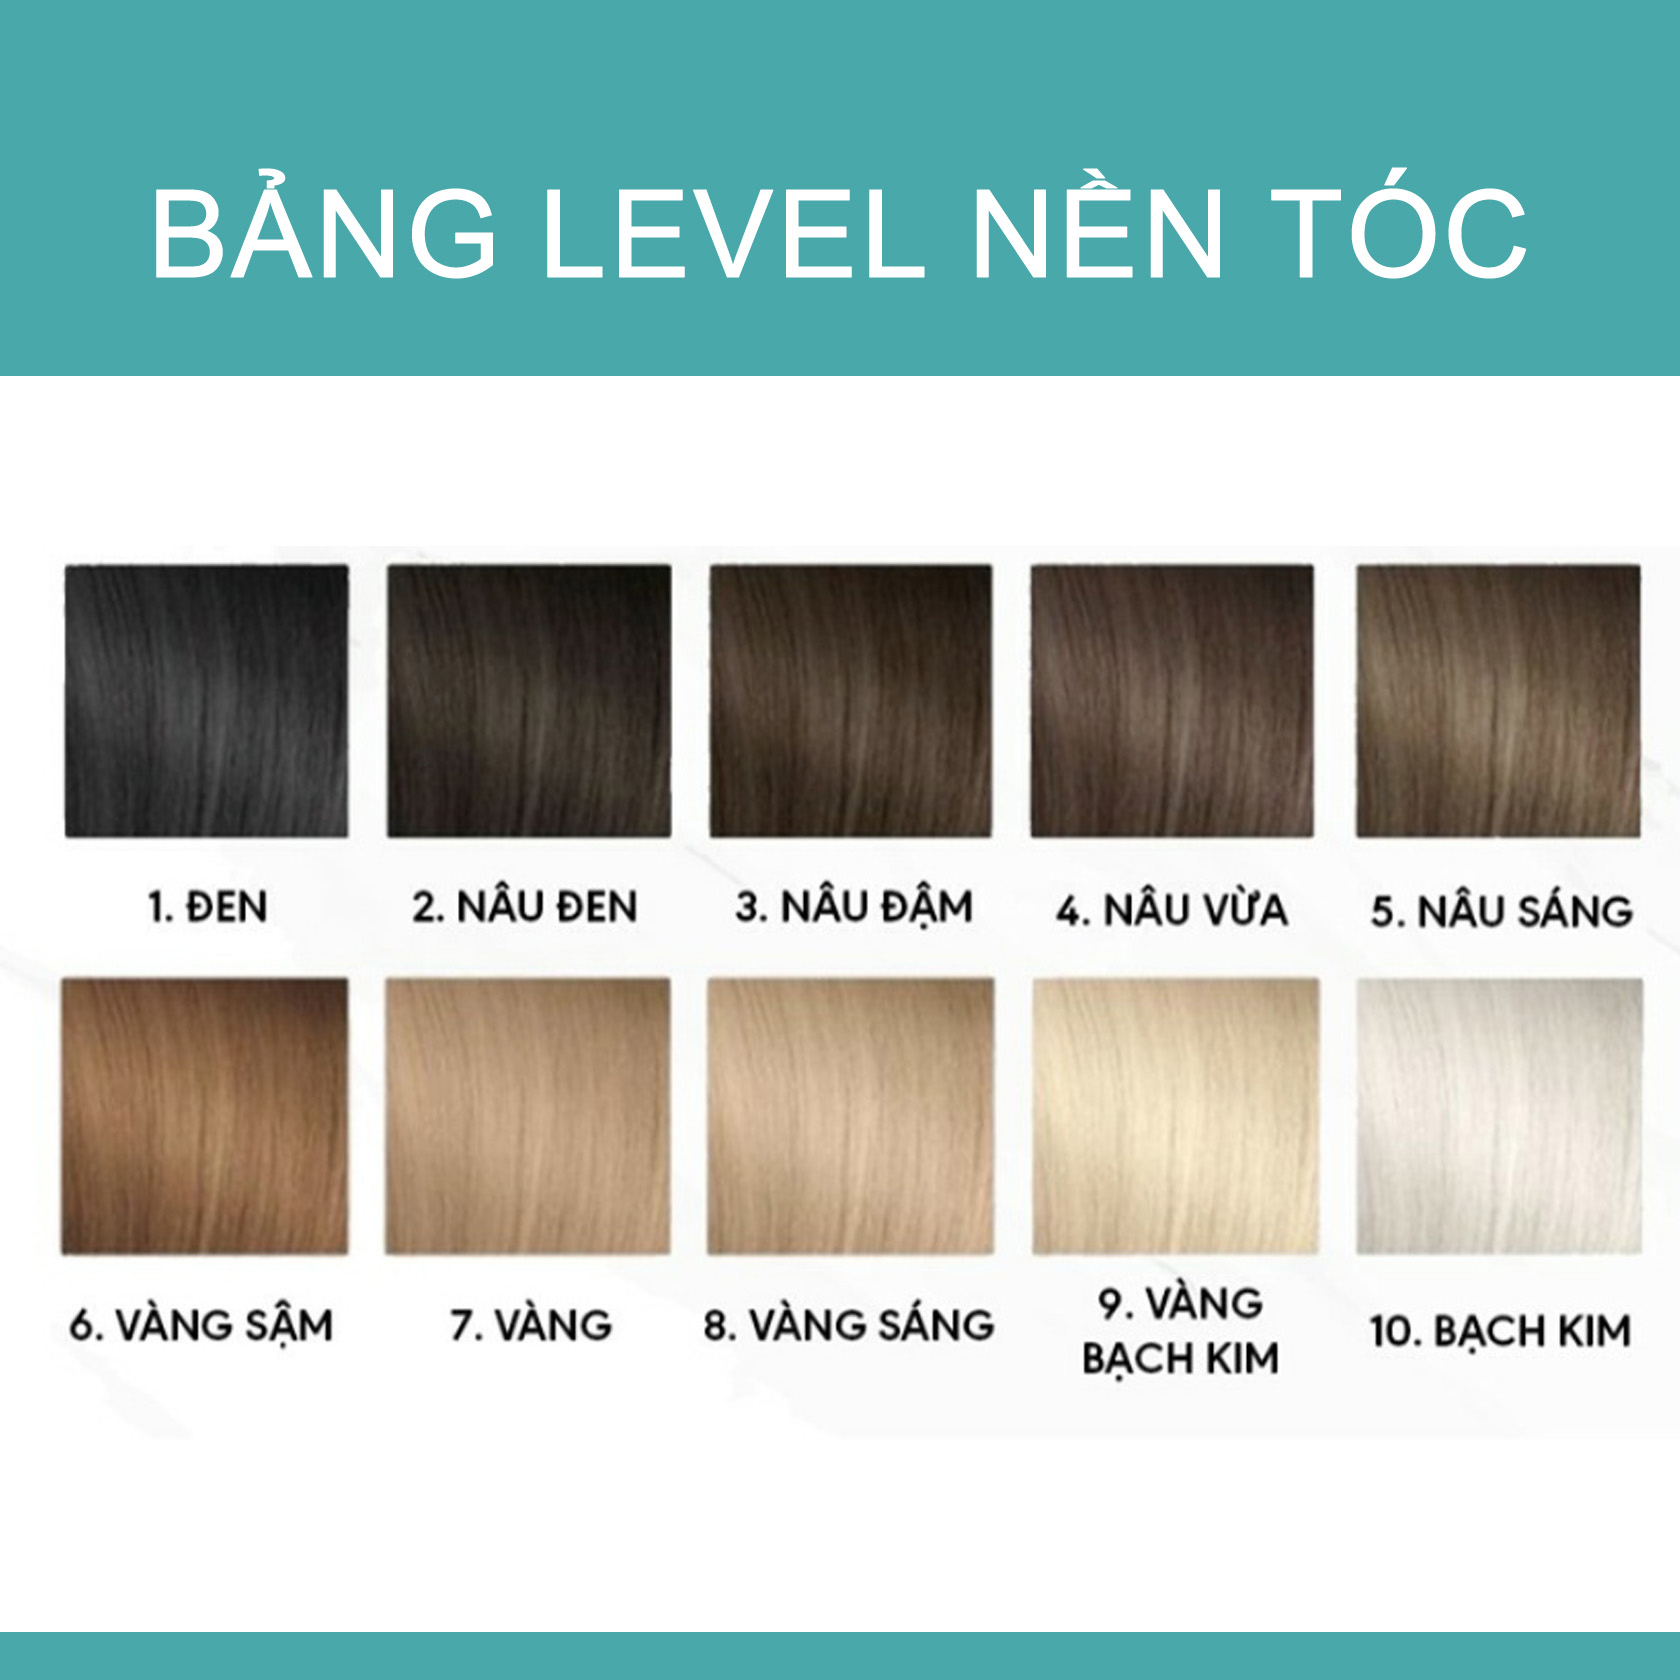 Tìm hiểu bảng màu nhuộm tóc đầy đủ và chi tiết nhất